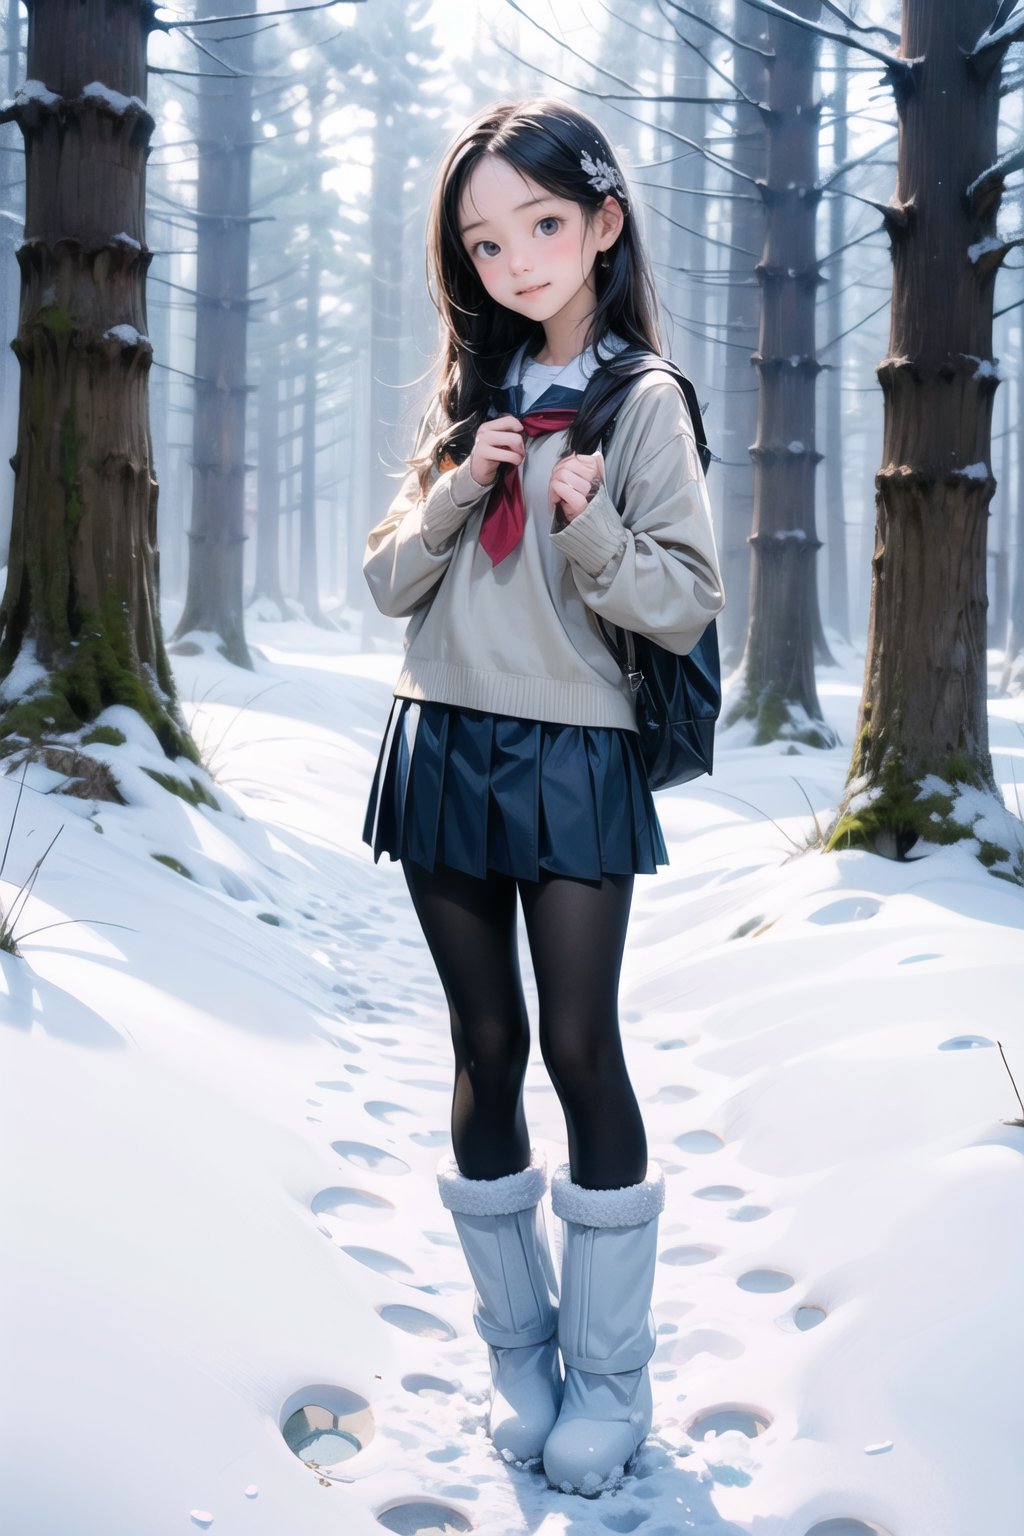 主：(foggy woods),((Full body image)),
人：1litte 1kid 7yo gril (Child:1.2),
髮：(long hair),
服：(Student uniform), (mini pleated skirt),(black compression tights), (((snow boots))),